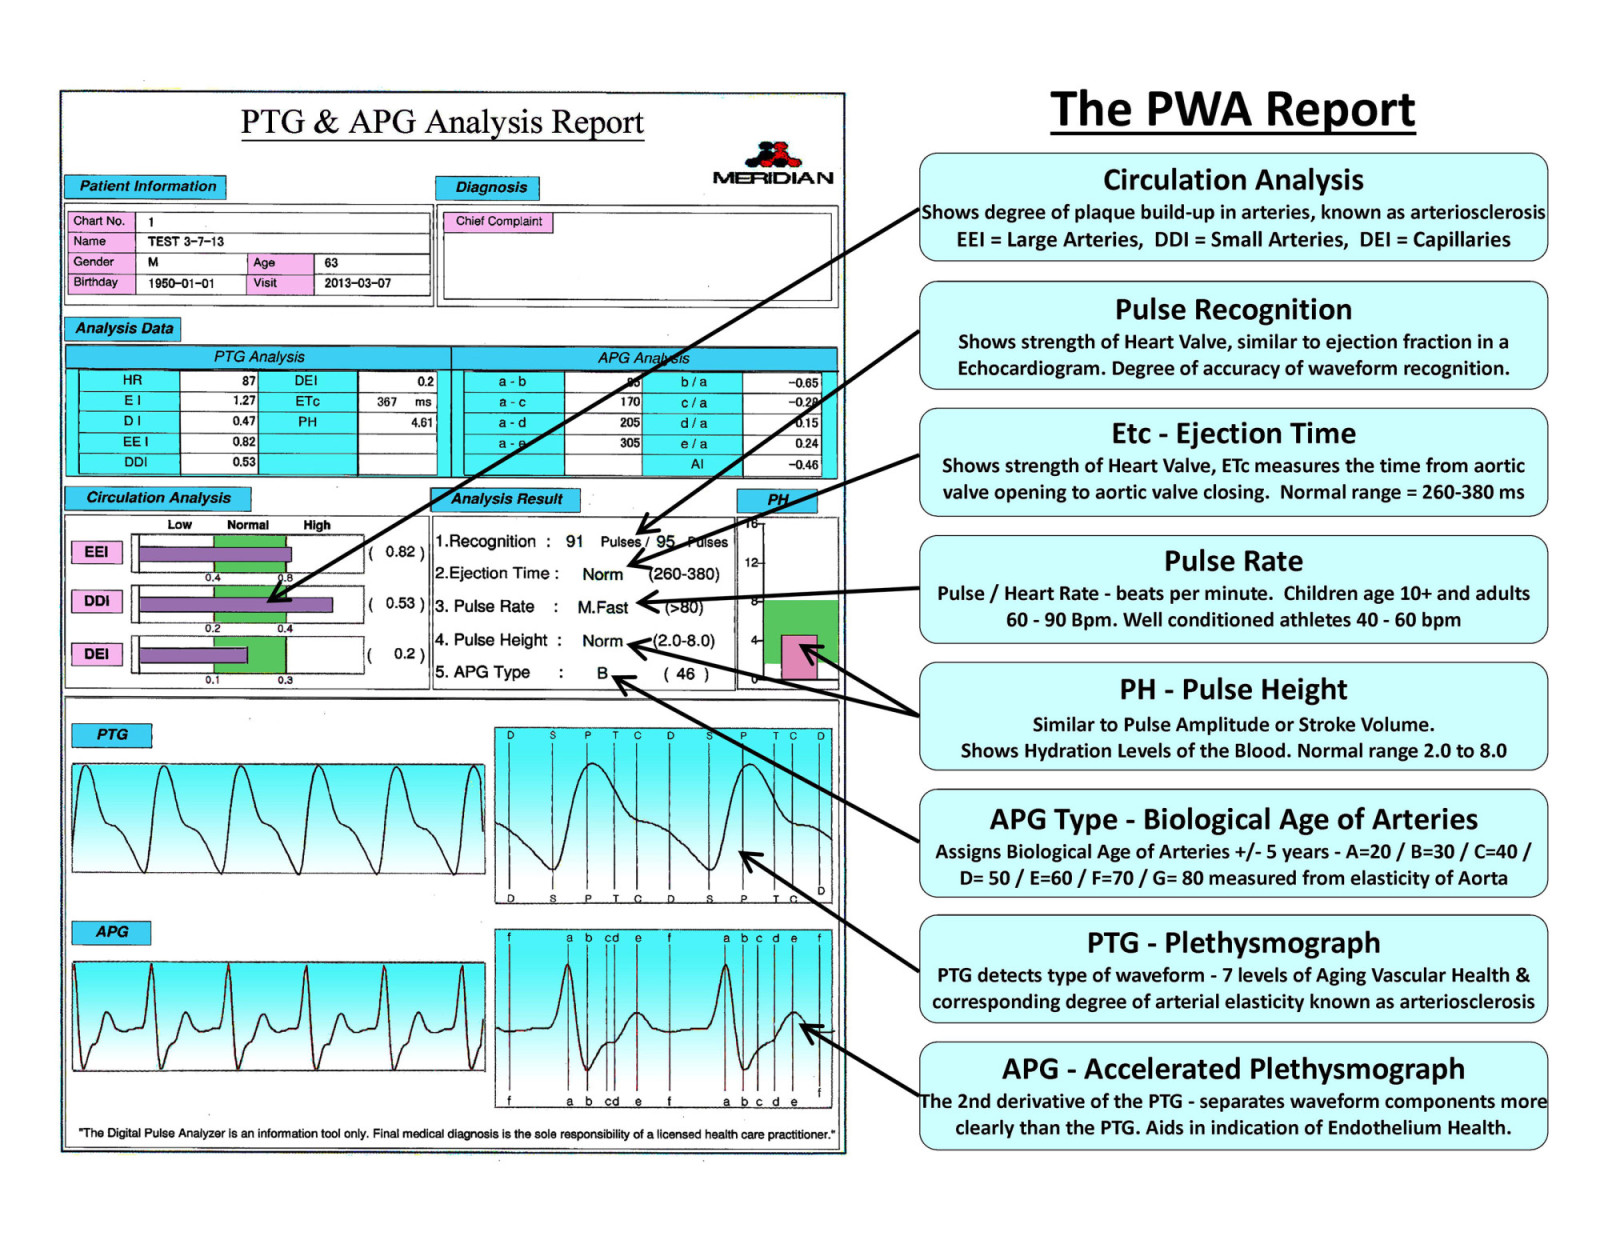 1-PWA Report - Summary